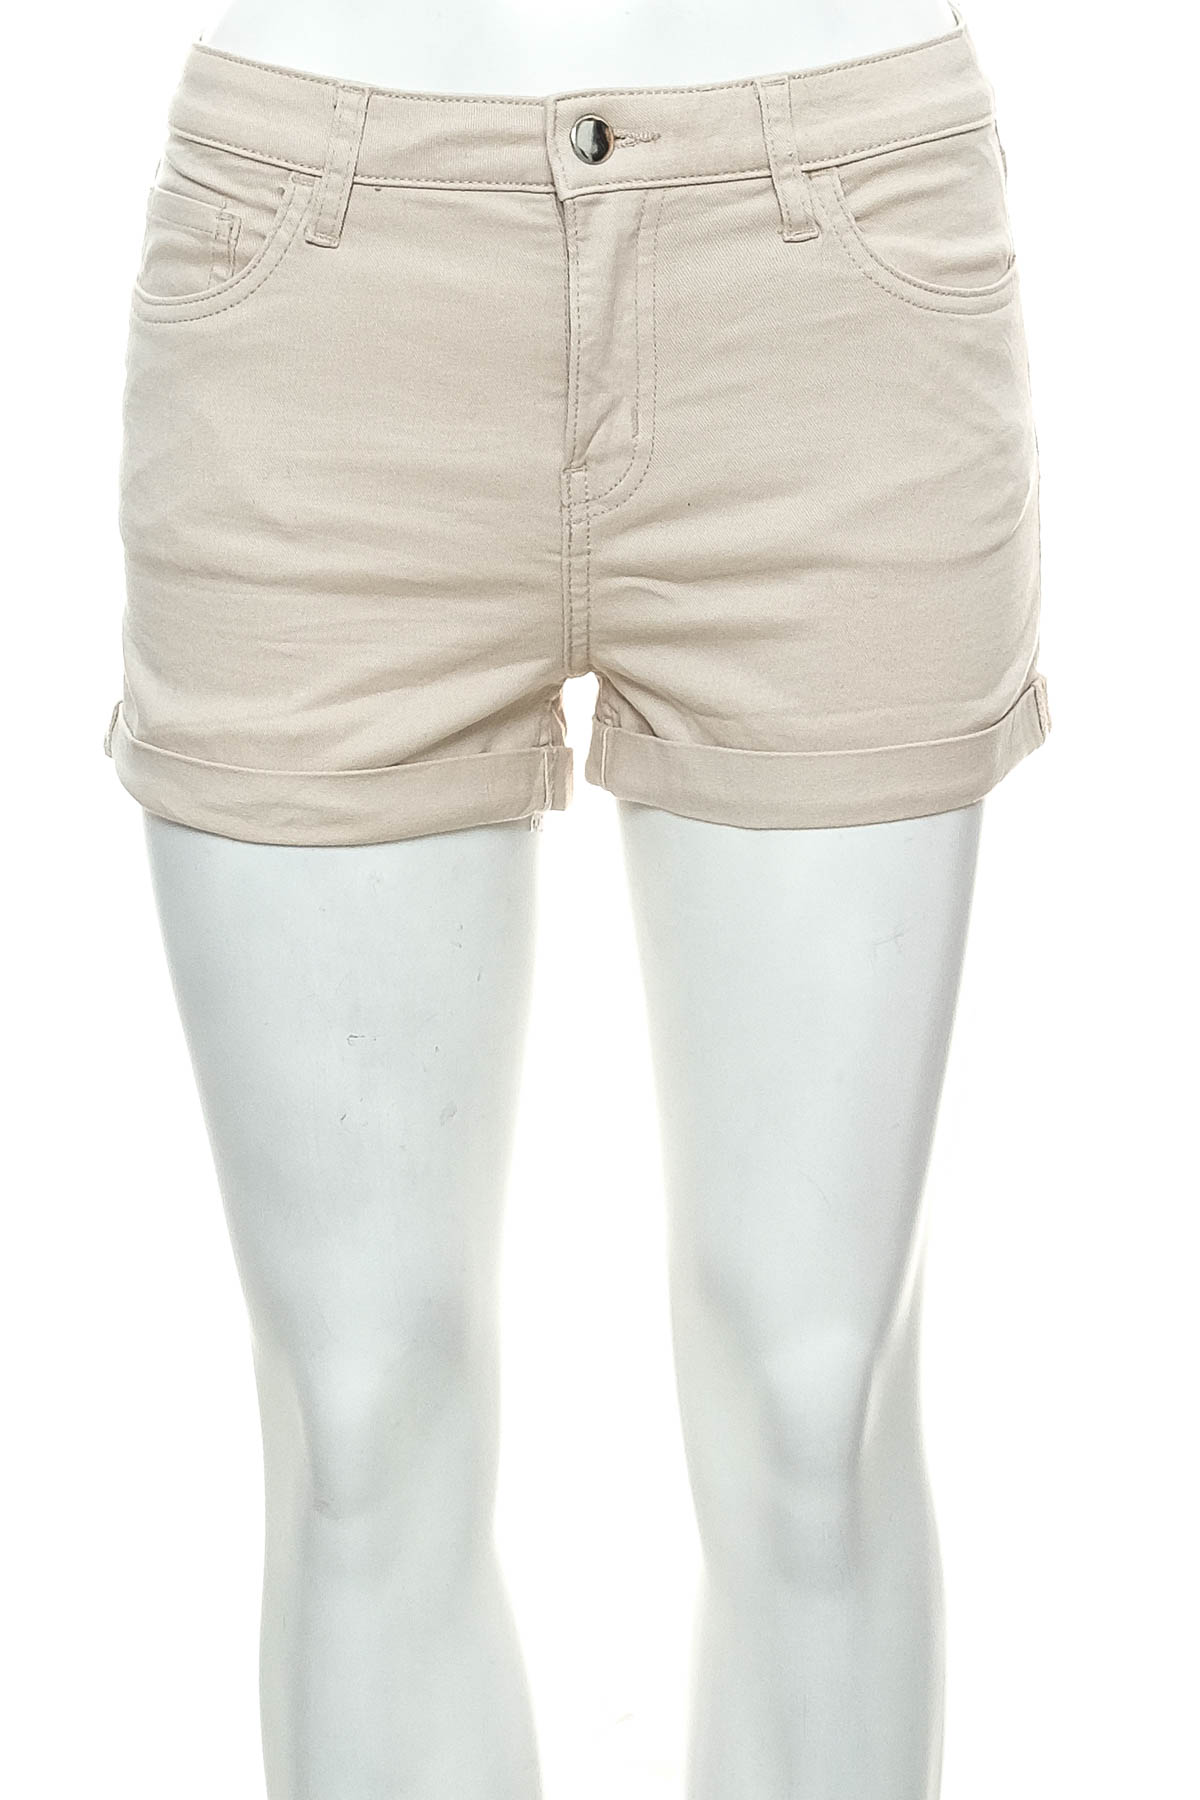 Γυναικείο κοντό παντελόνι - H&M - 0